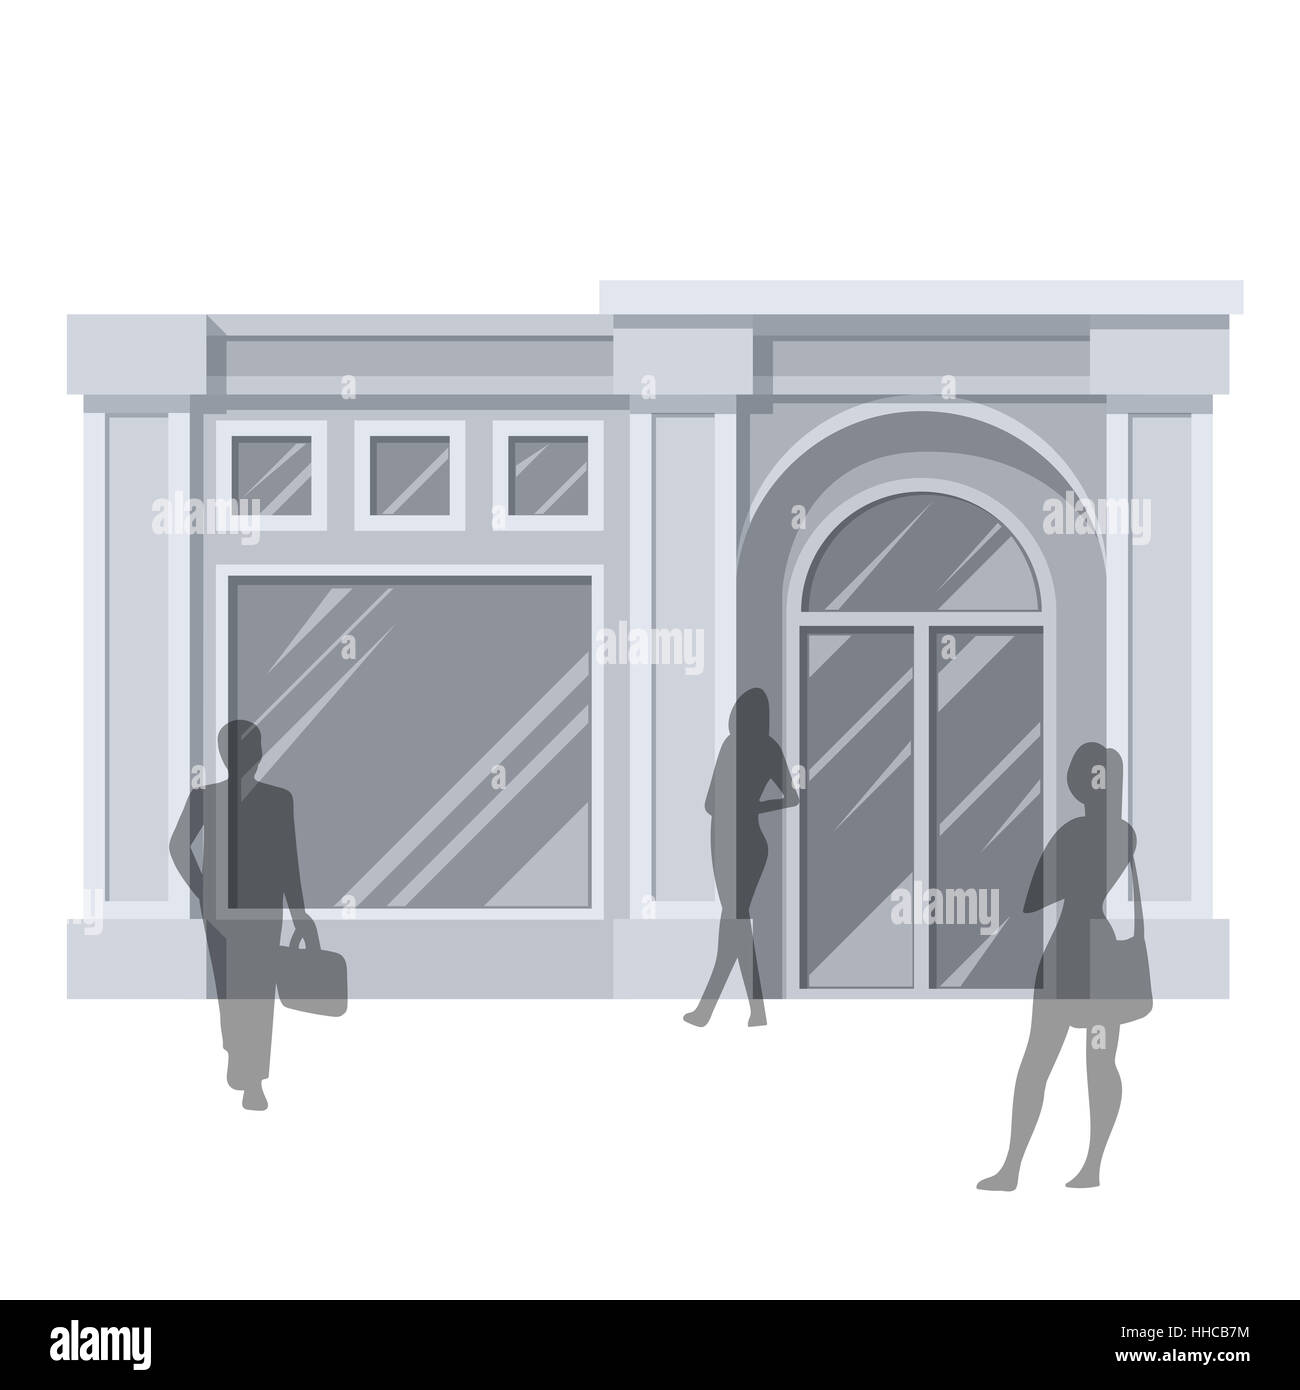 Abstract illustration de Urban Shop Façade et gens de shopping. Série de détail. Vector EPS10. Banque D'Images